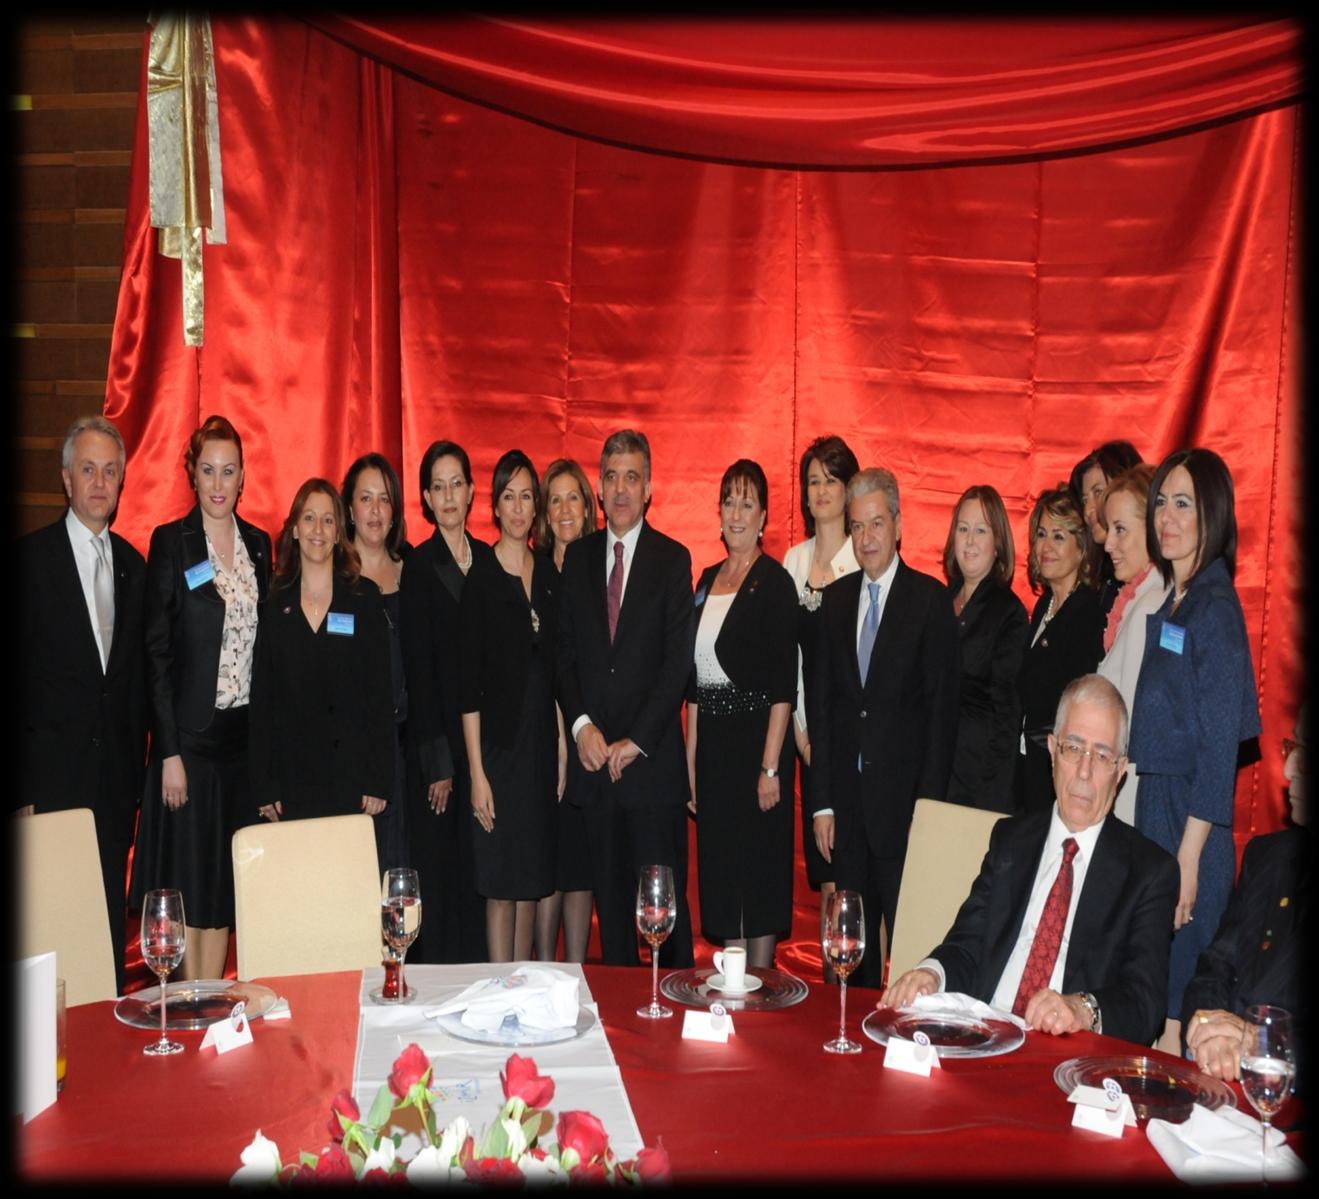 CUMHURBAŞKANIMIZ SAYIN ABDULLAH GÜL TARAFINDAN ONURLANDIRILAN AKŞAM YEMEĞİ 07 Mayıs 2011 tarihinde Swiss Otel de Cumhurbaşkanımız Sayın Abdullah Gül tarafından onurlandırılan akşam